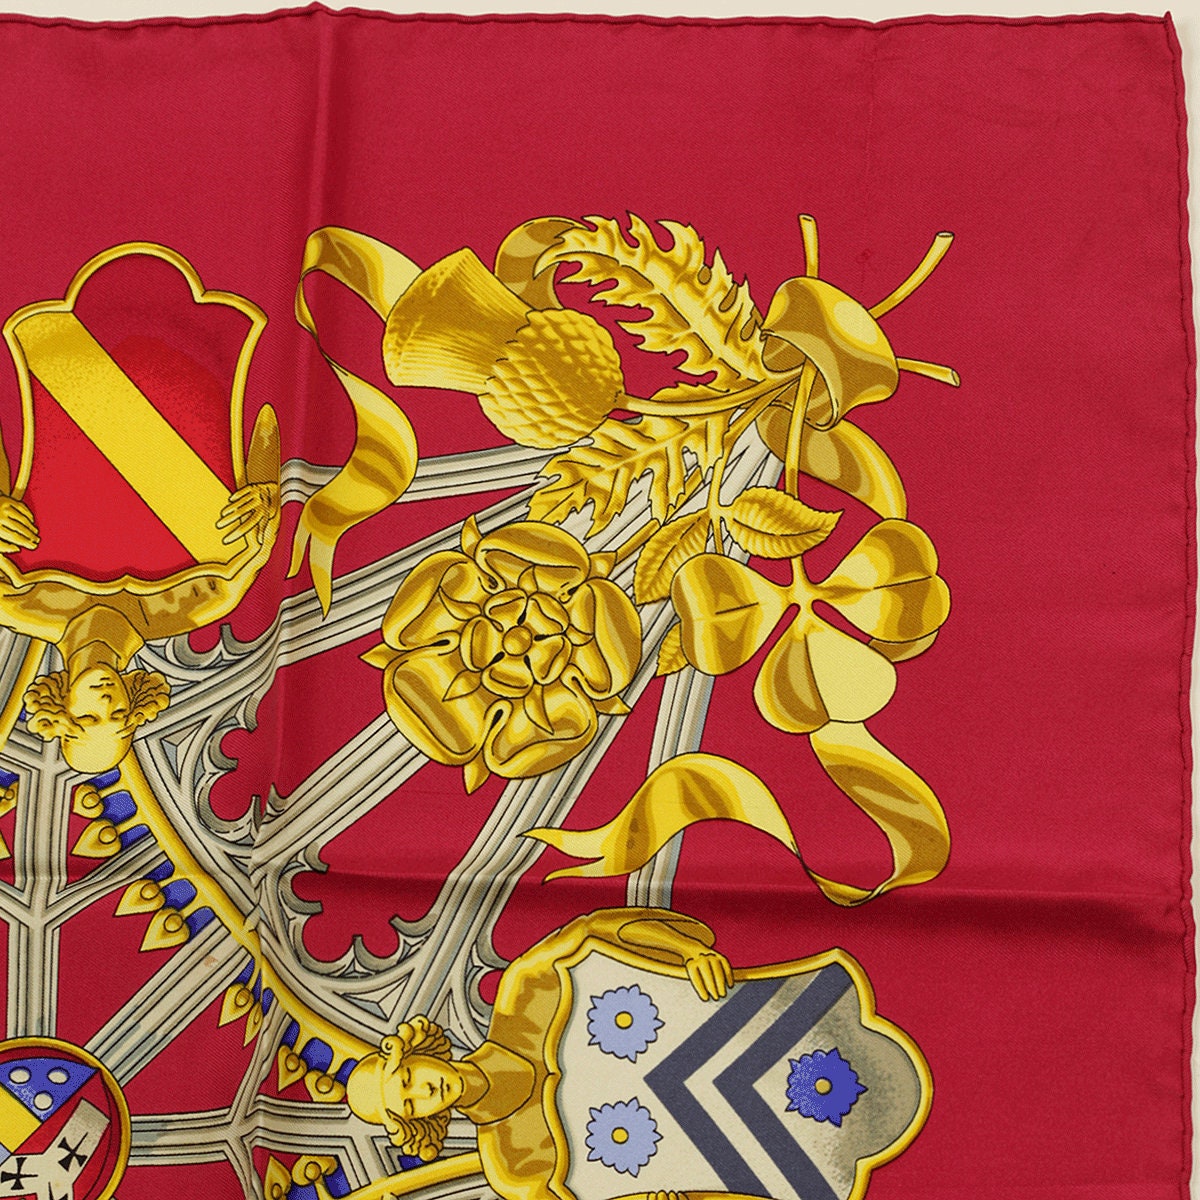 Hermes Scarf "British Heraldy" by Vladimir Rybaltchenko 90cm Silk